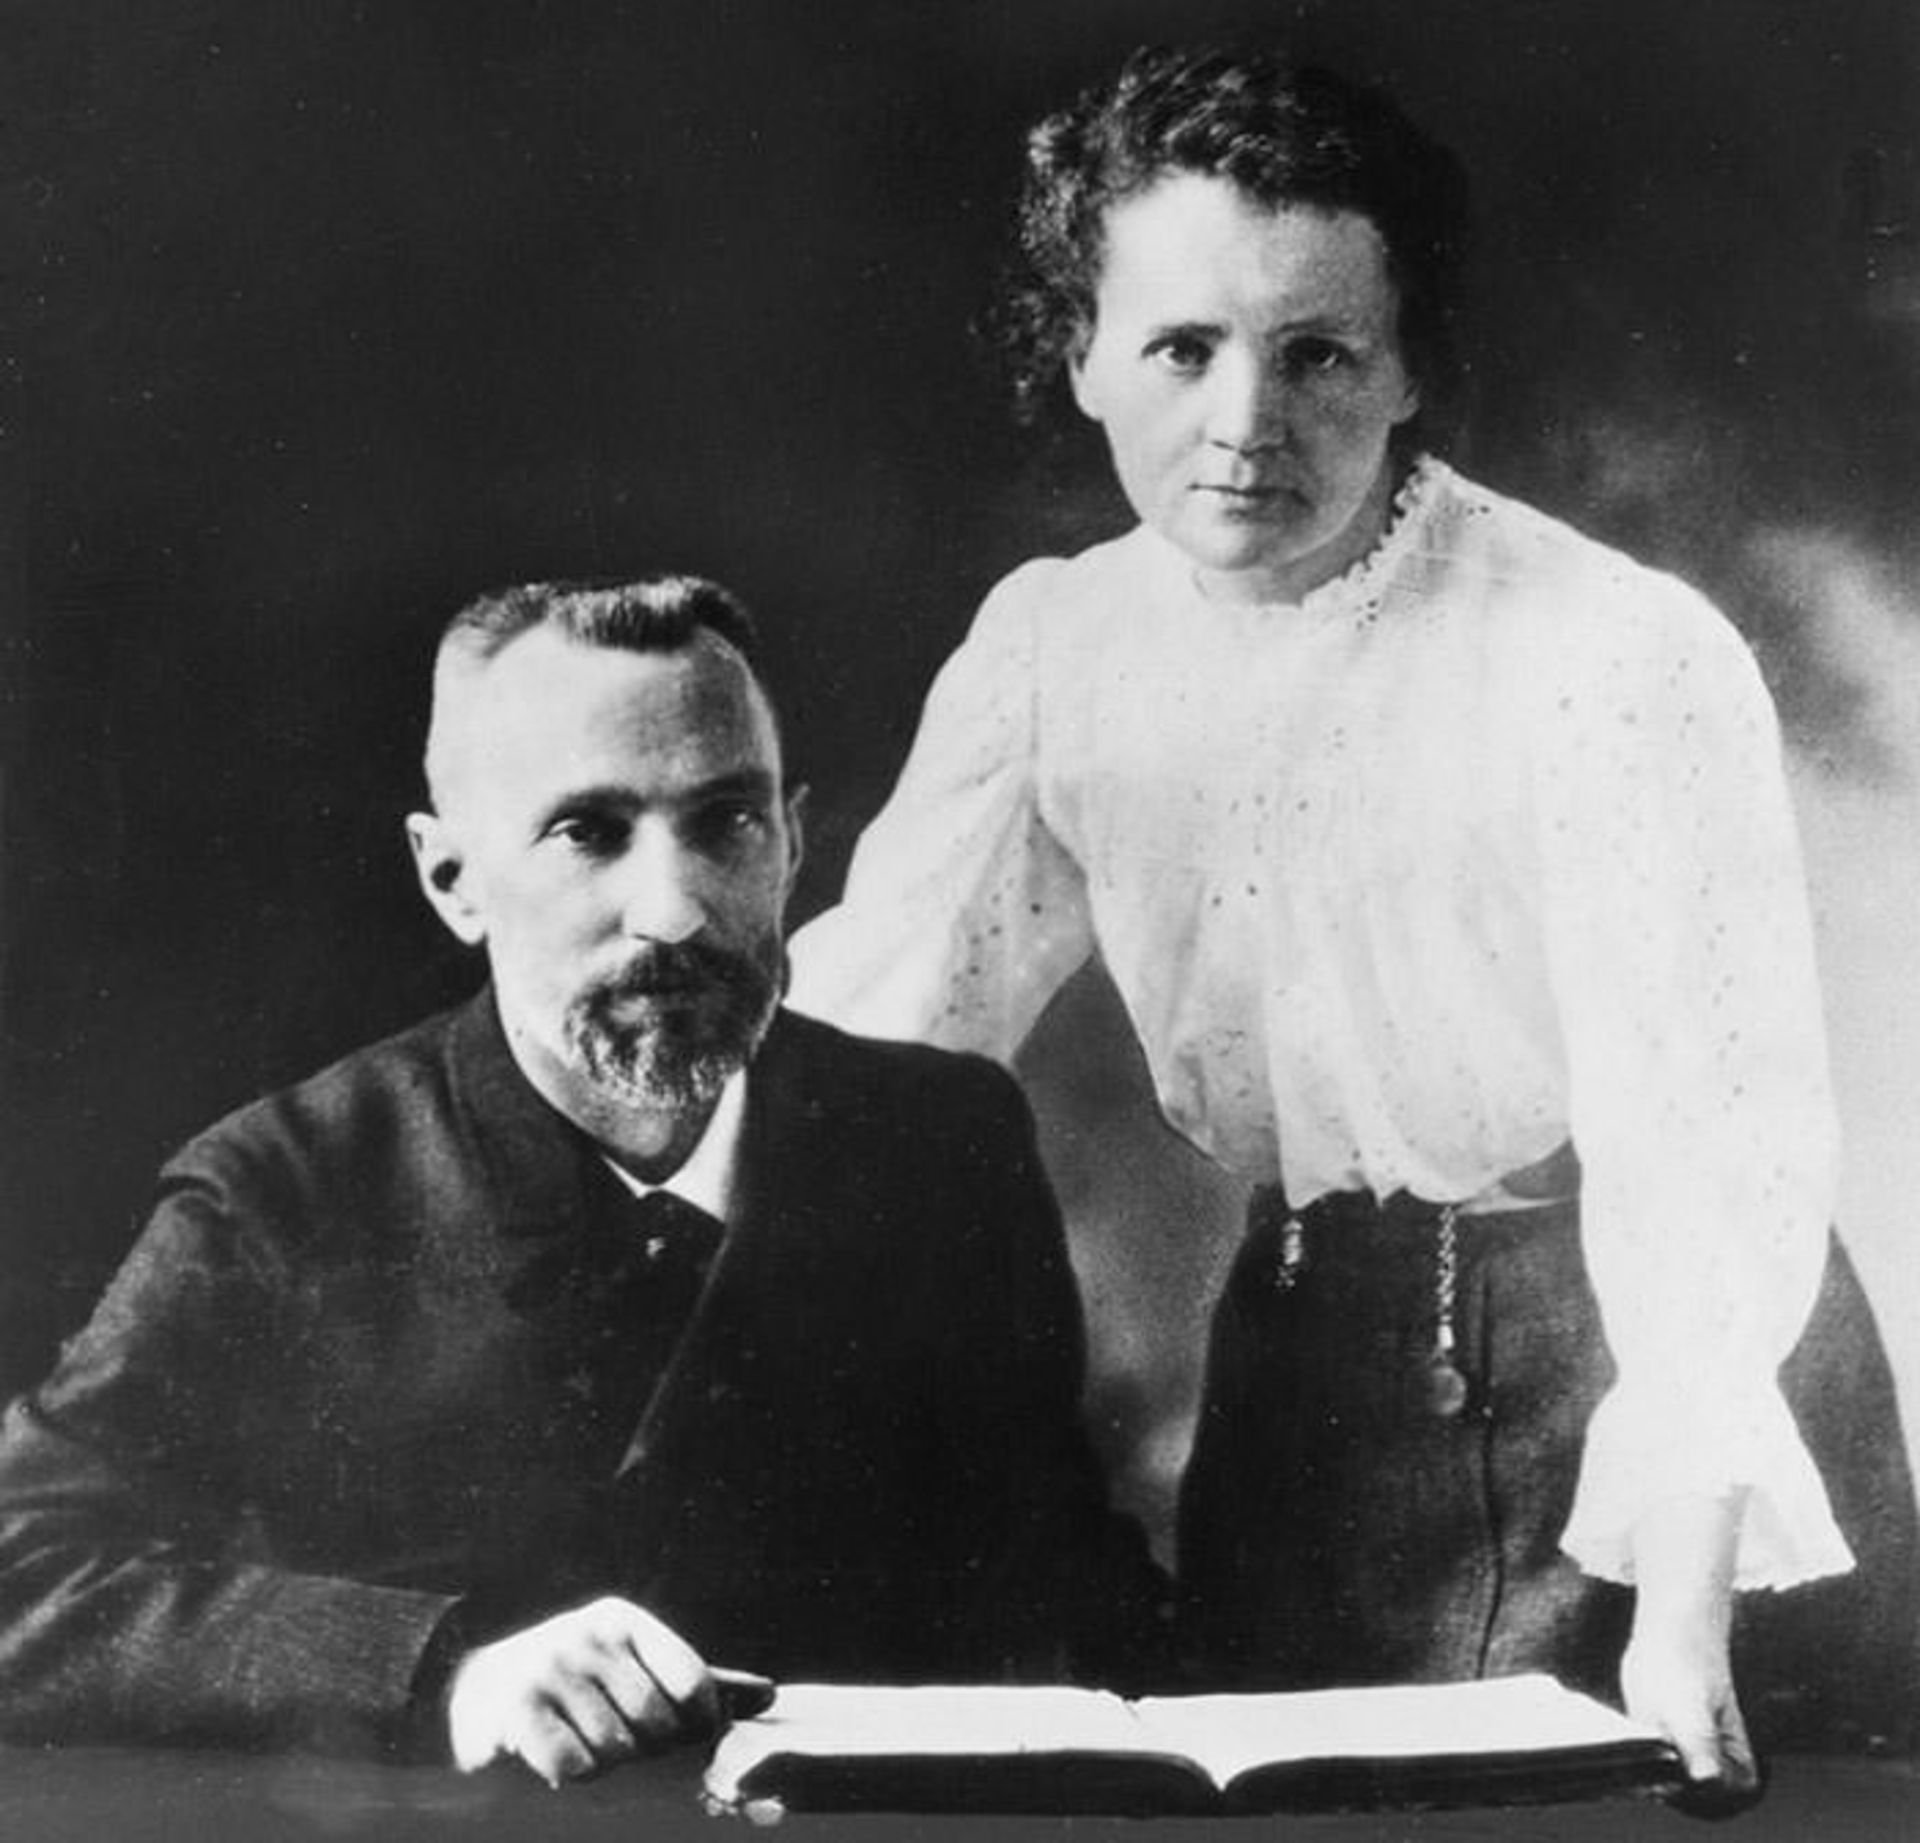 مرجع متخصصين ايران ماري كوري / Marie Curie